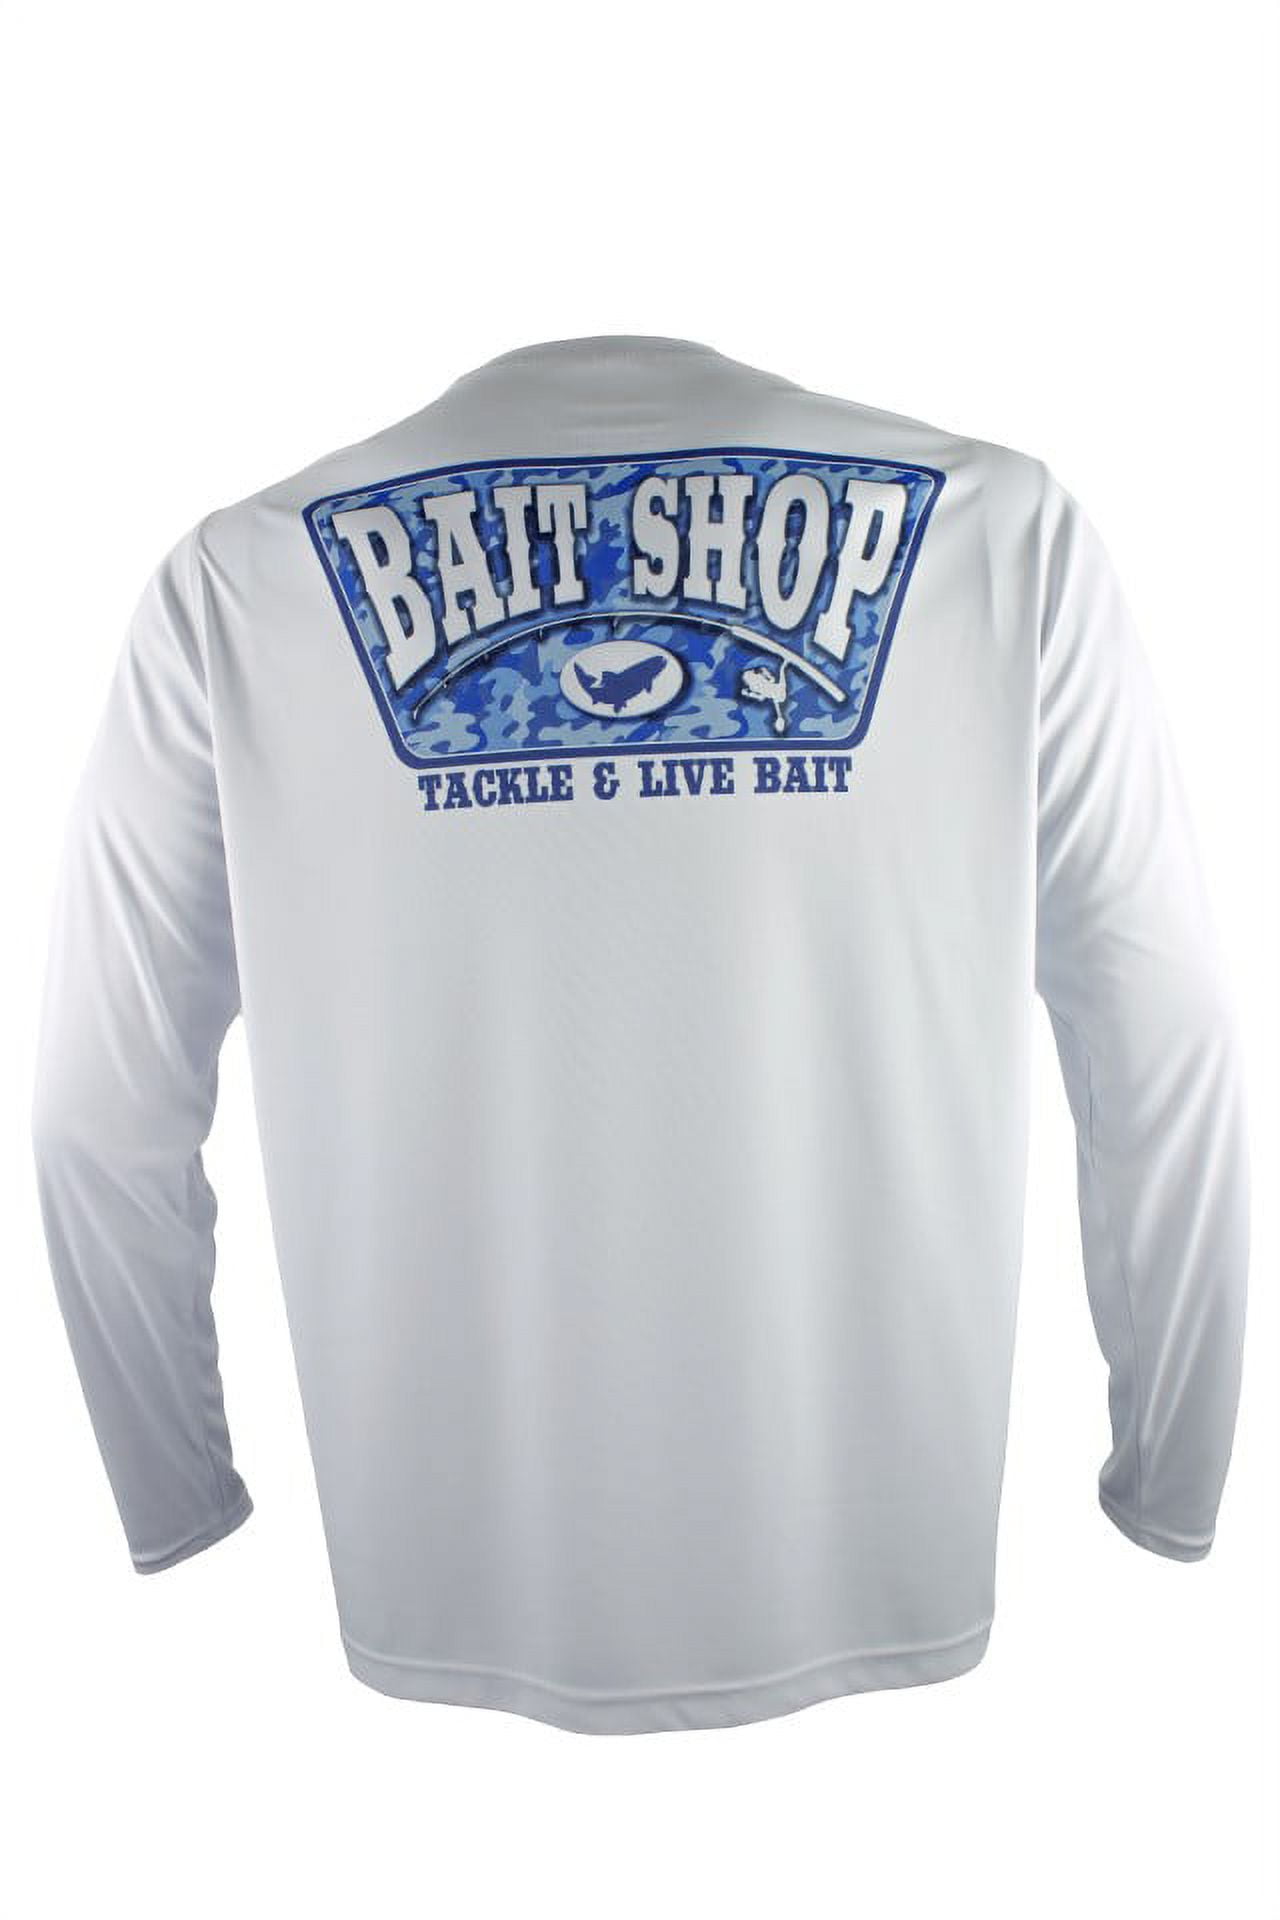 FinTech Men's Long Sleeve Fishing Shirt Camo Bait Shop - Large